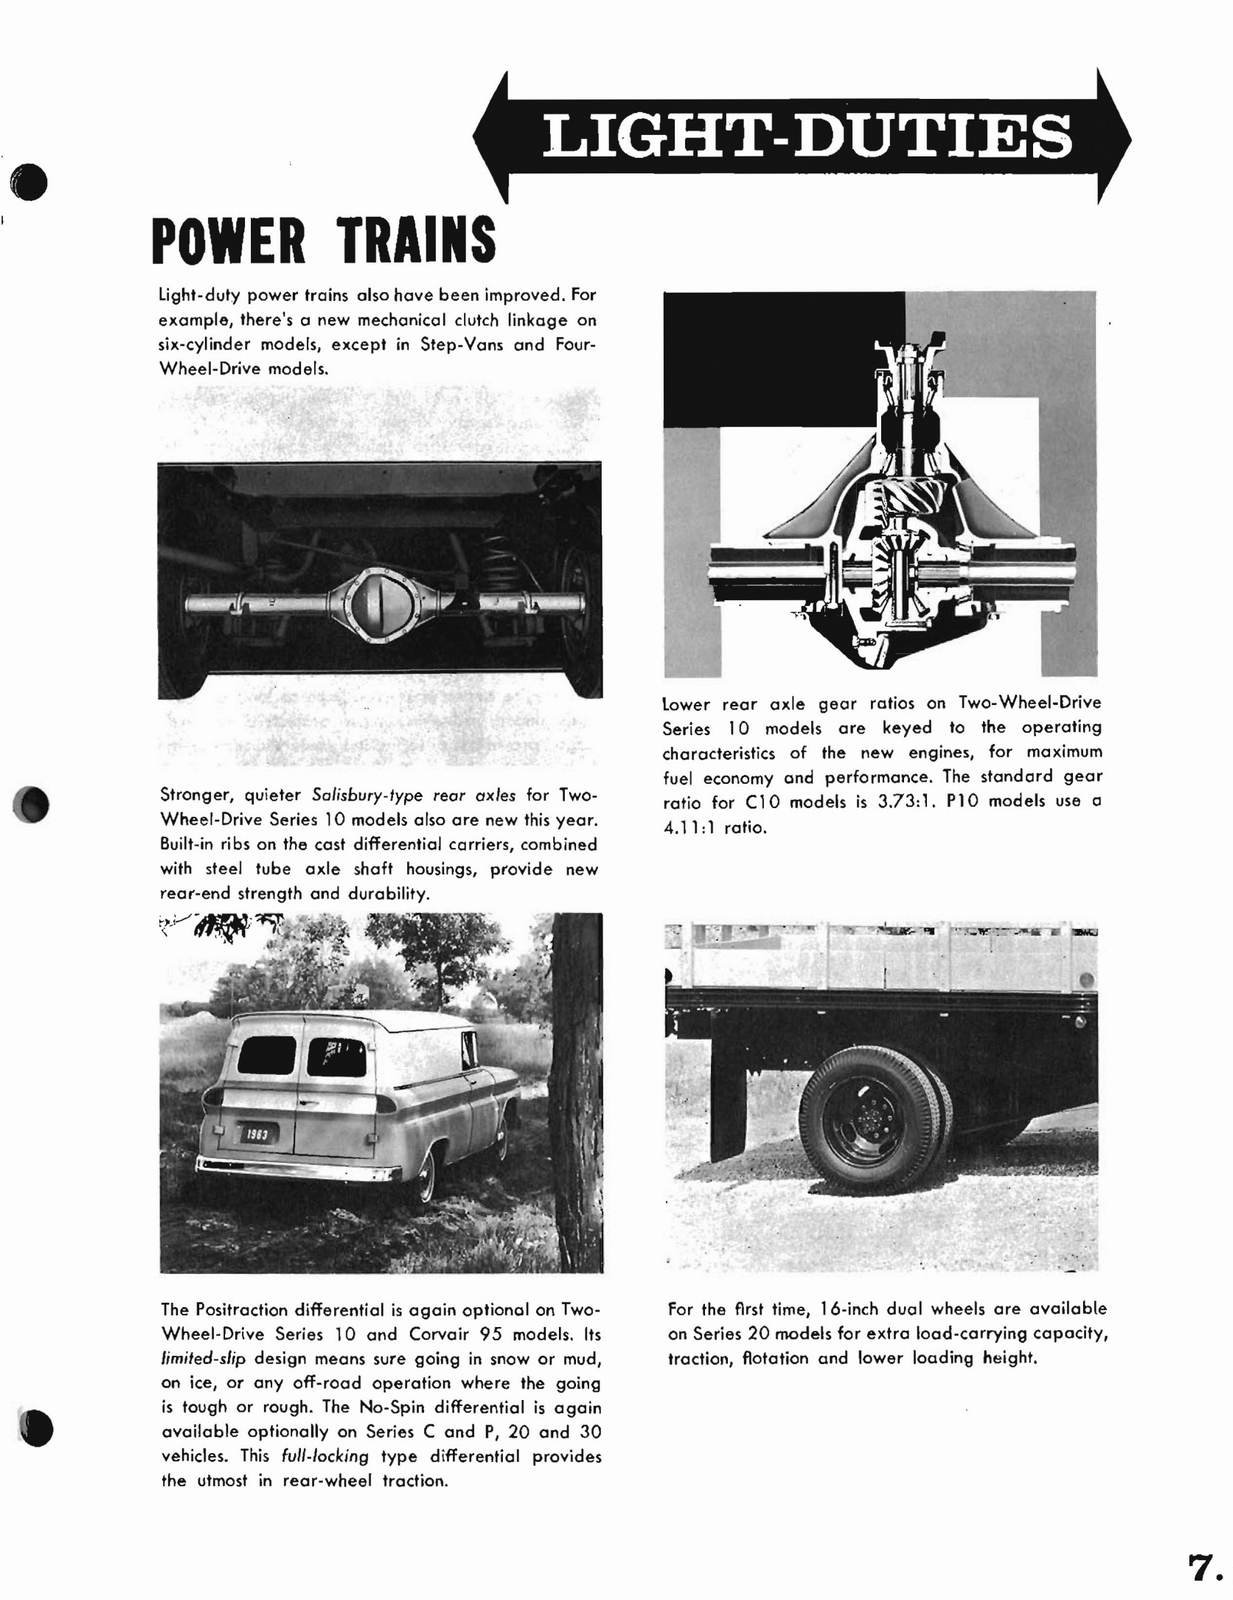 n_1963 Chevrolet Trucks Booklet-07.jpg